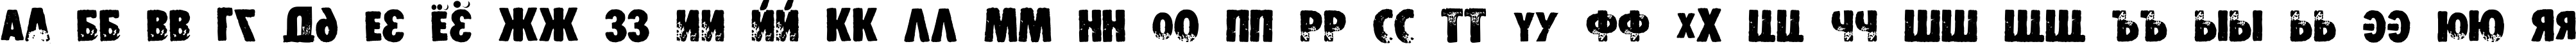 Пример написания русского алфавита шрифтом DS Stamper